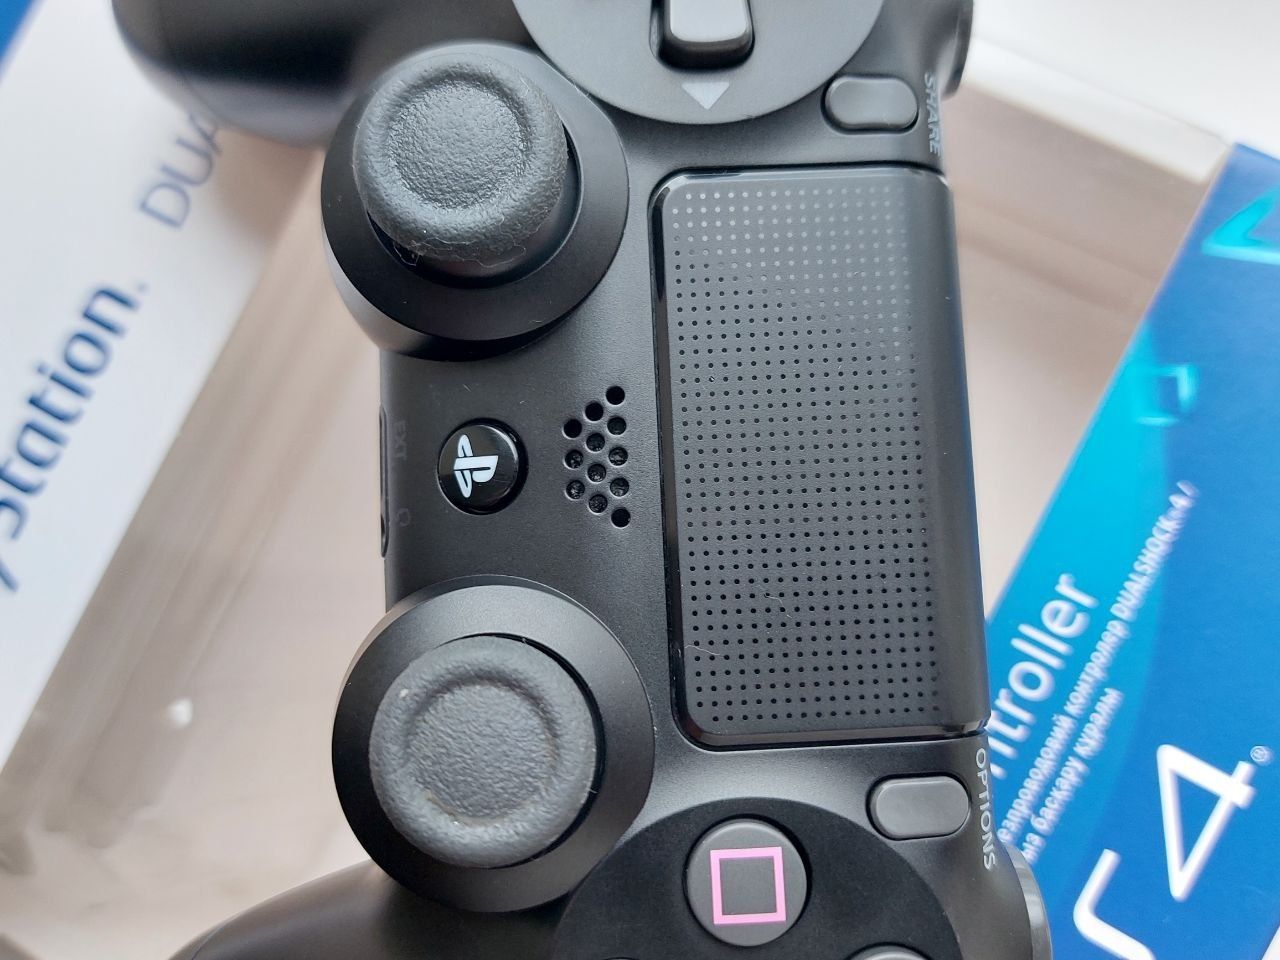 Джойстик Ps4 як новий оригінальний  геймпад playstation 4 PS4 pro